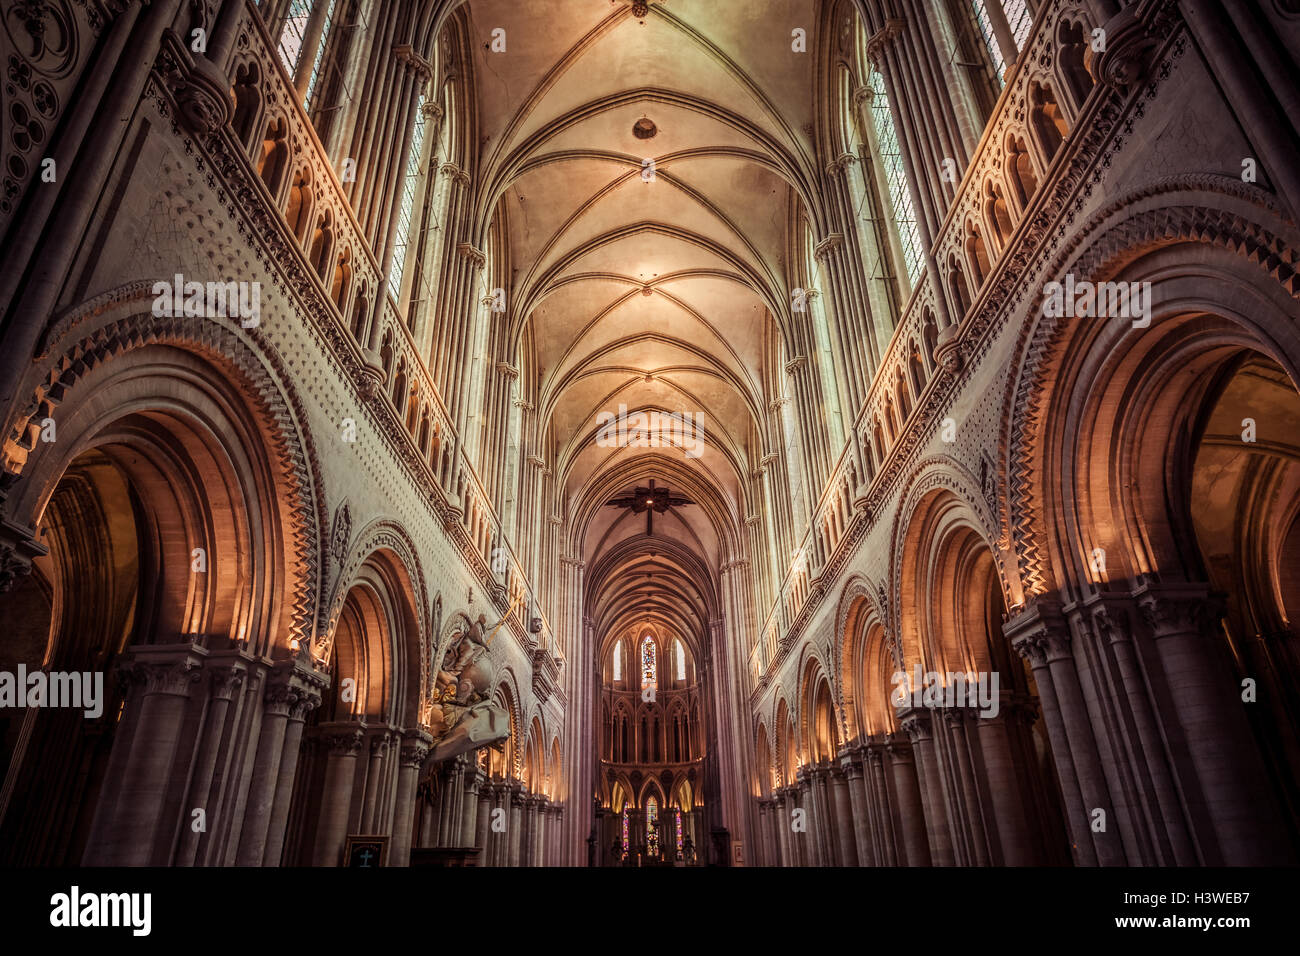 La cathédrale de Bayeux, Normandie, France Banque D'Images